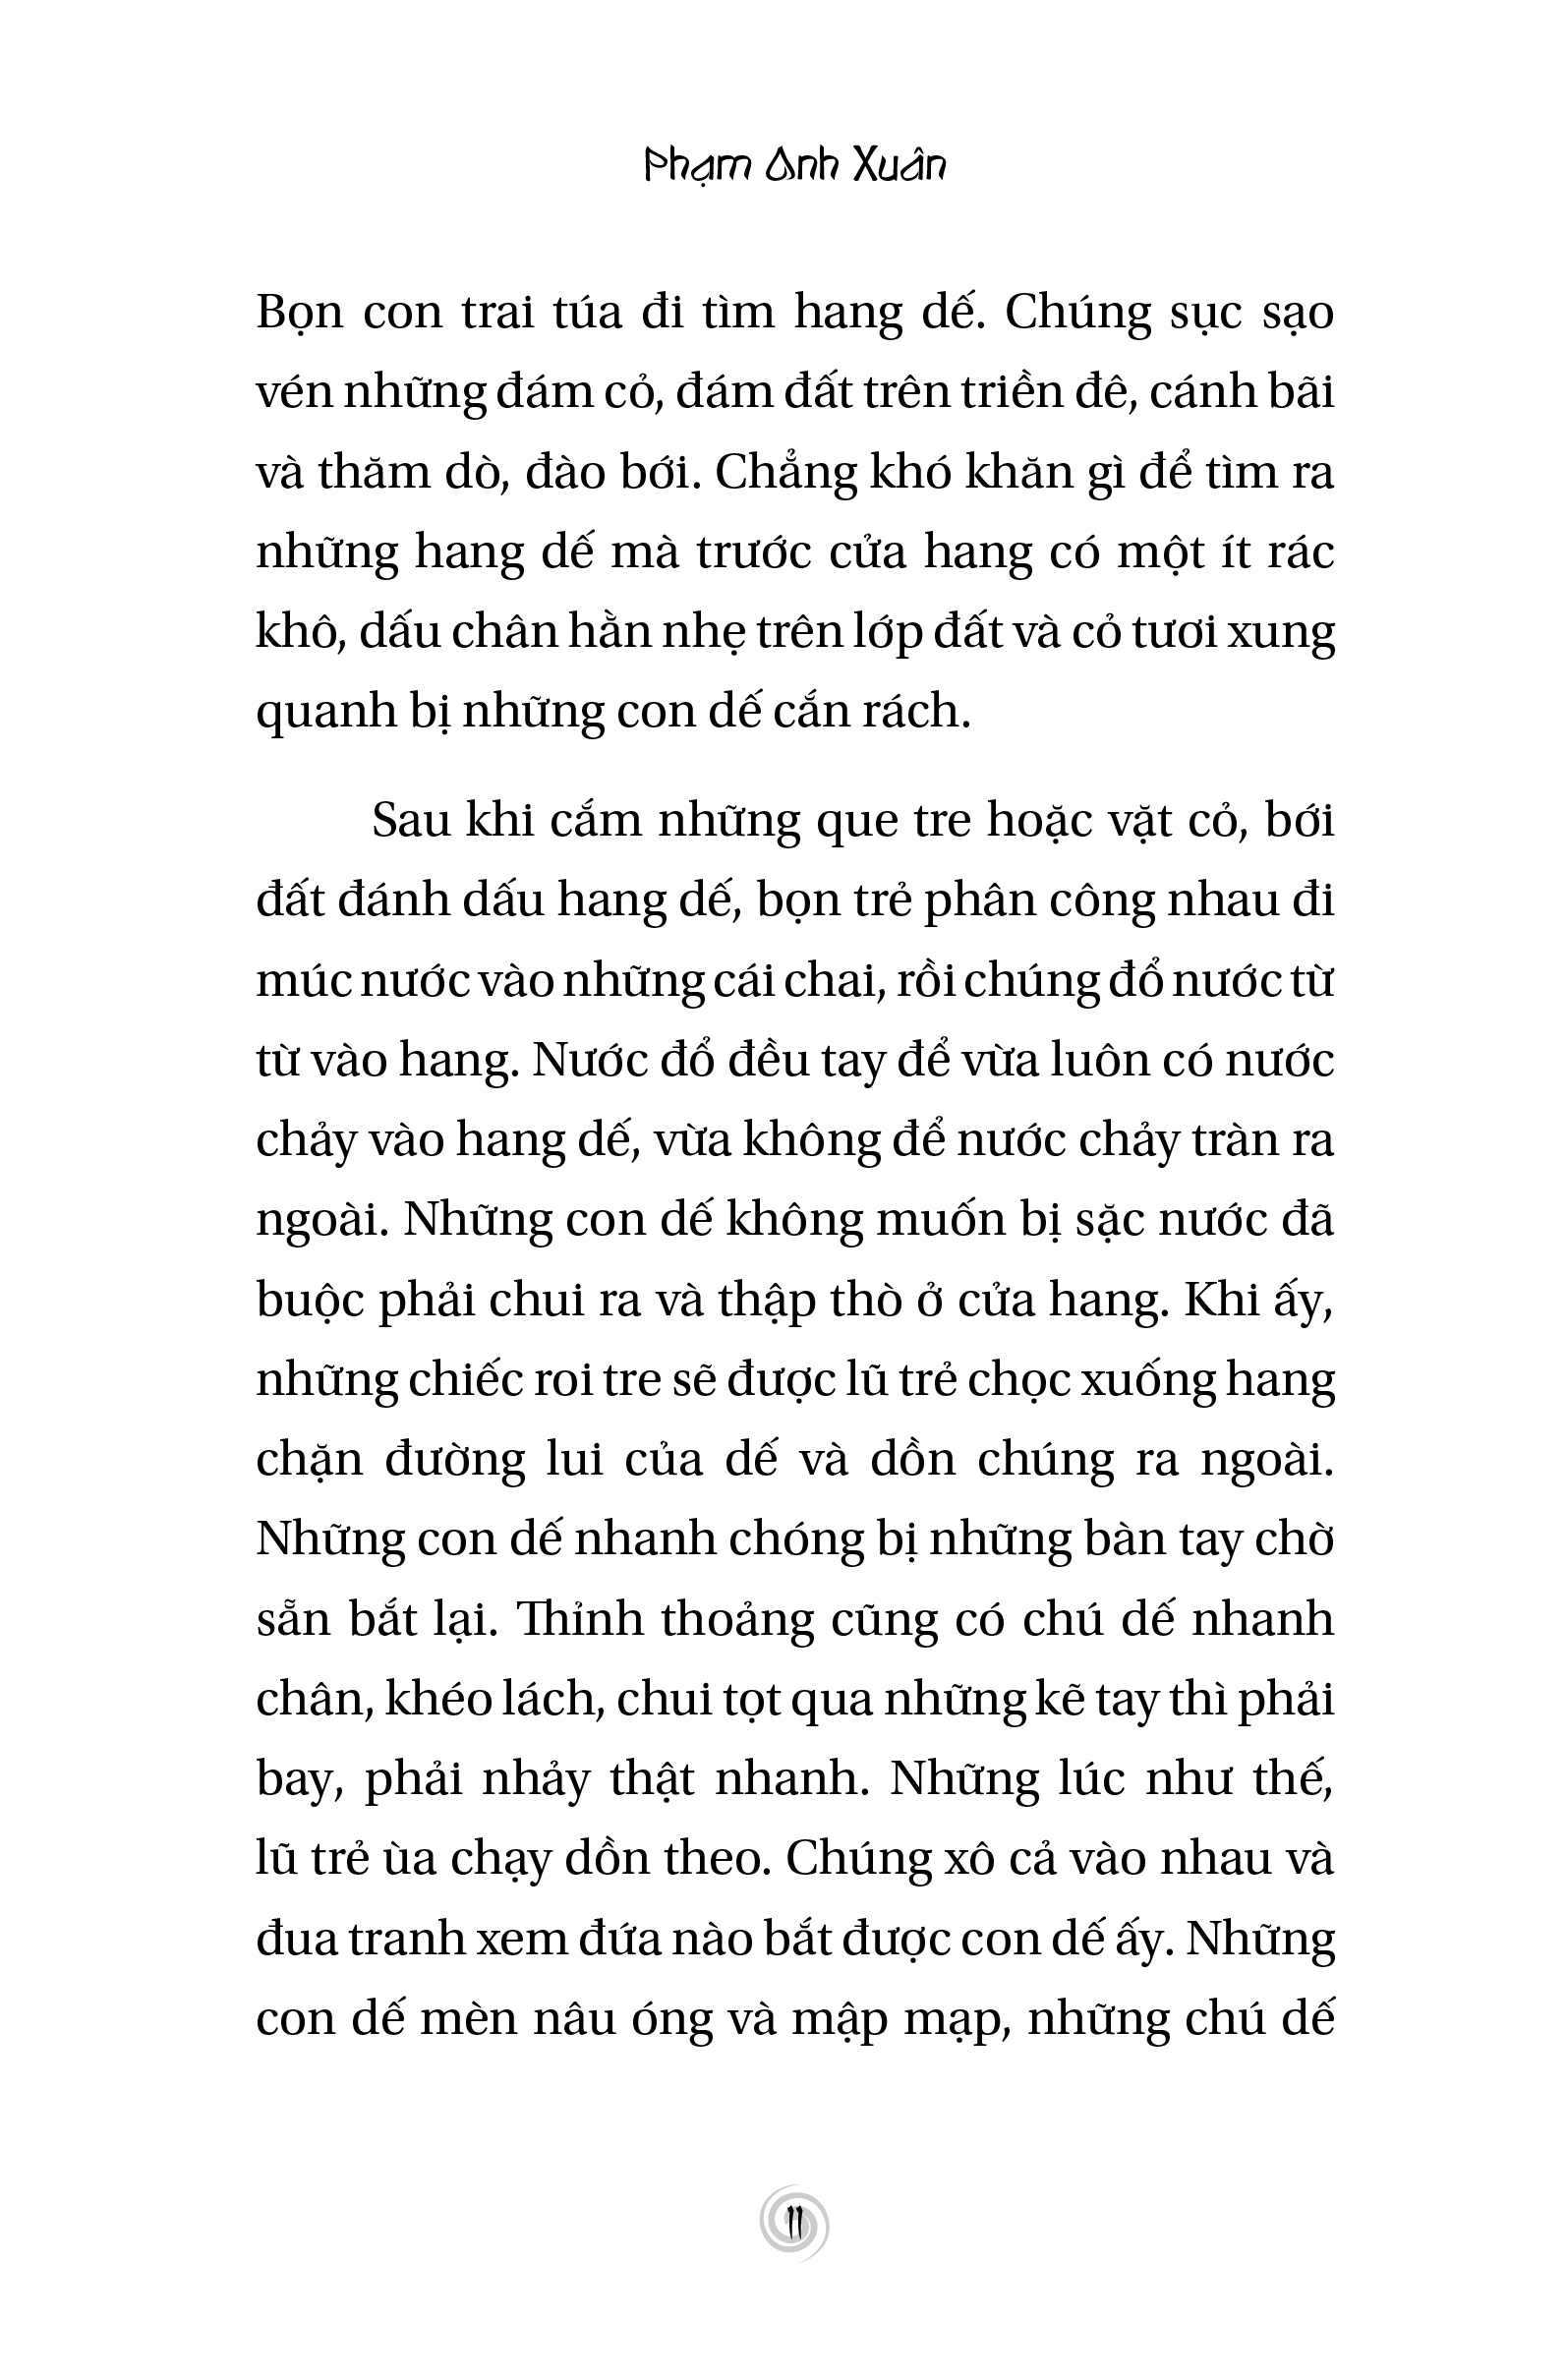 Nghé Ọ Hai Xoáy - Phạm Anh Xuân